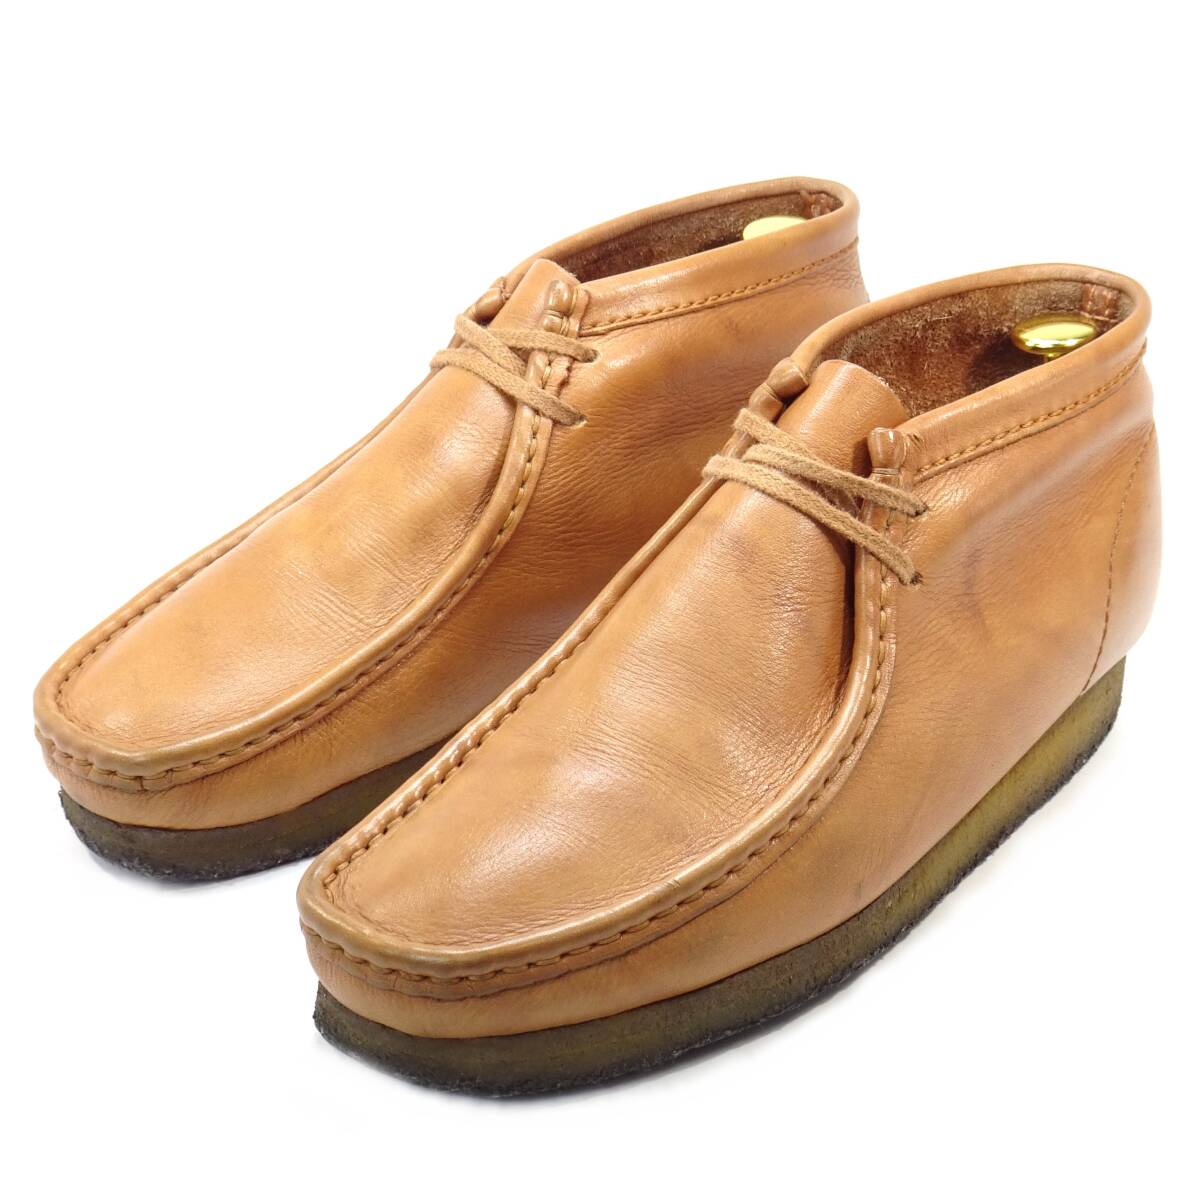  быстрое решение Clarks Wallabees UK 7wala Be ботинки Clarks мужской чай Brown натуральная кожа мокасины натуральная кожа casual кожа обувь блинчики подошва джентльмен обувь 